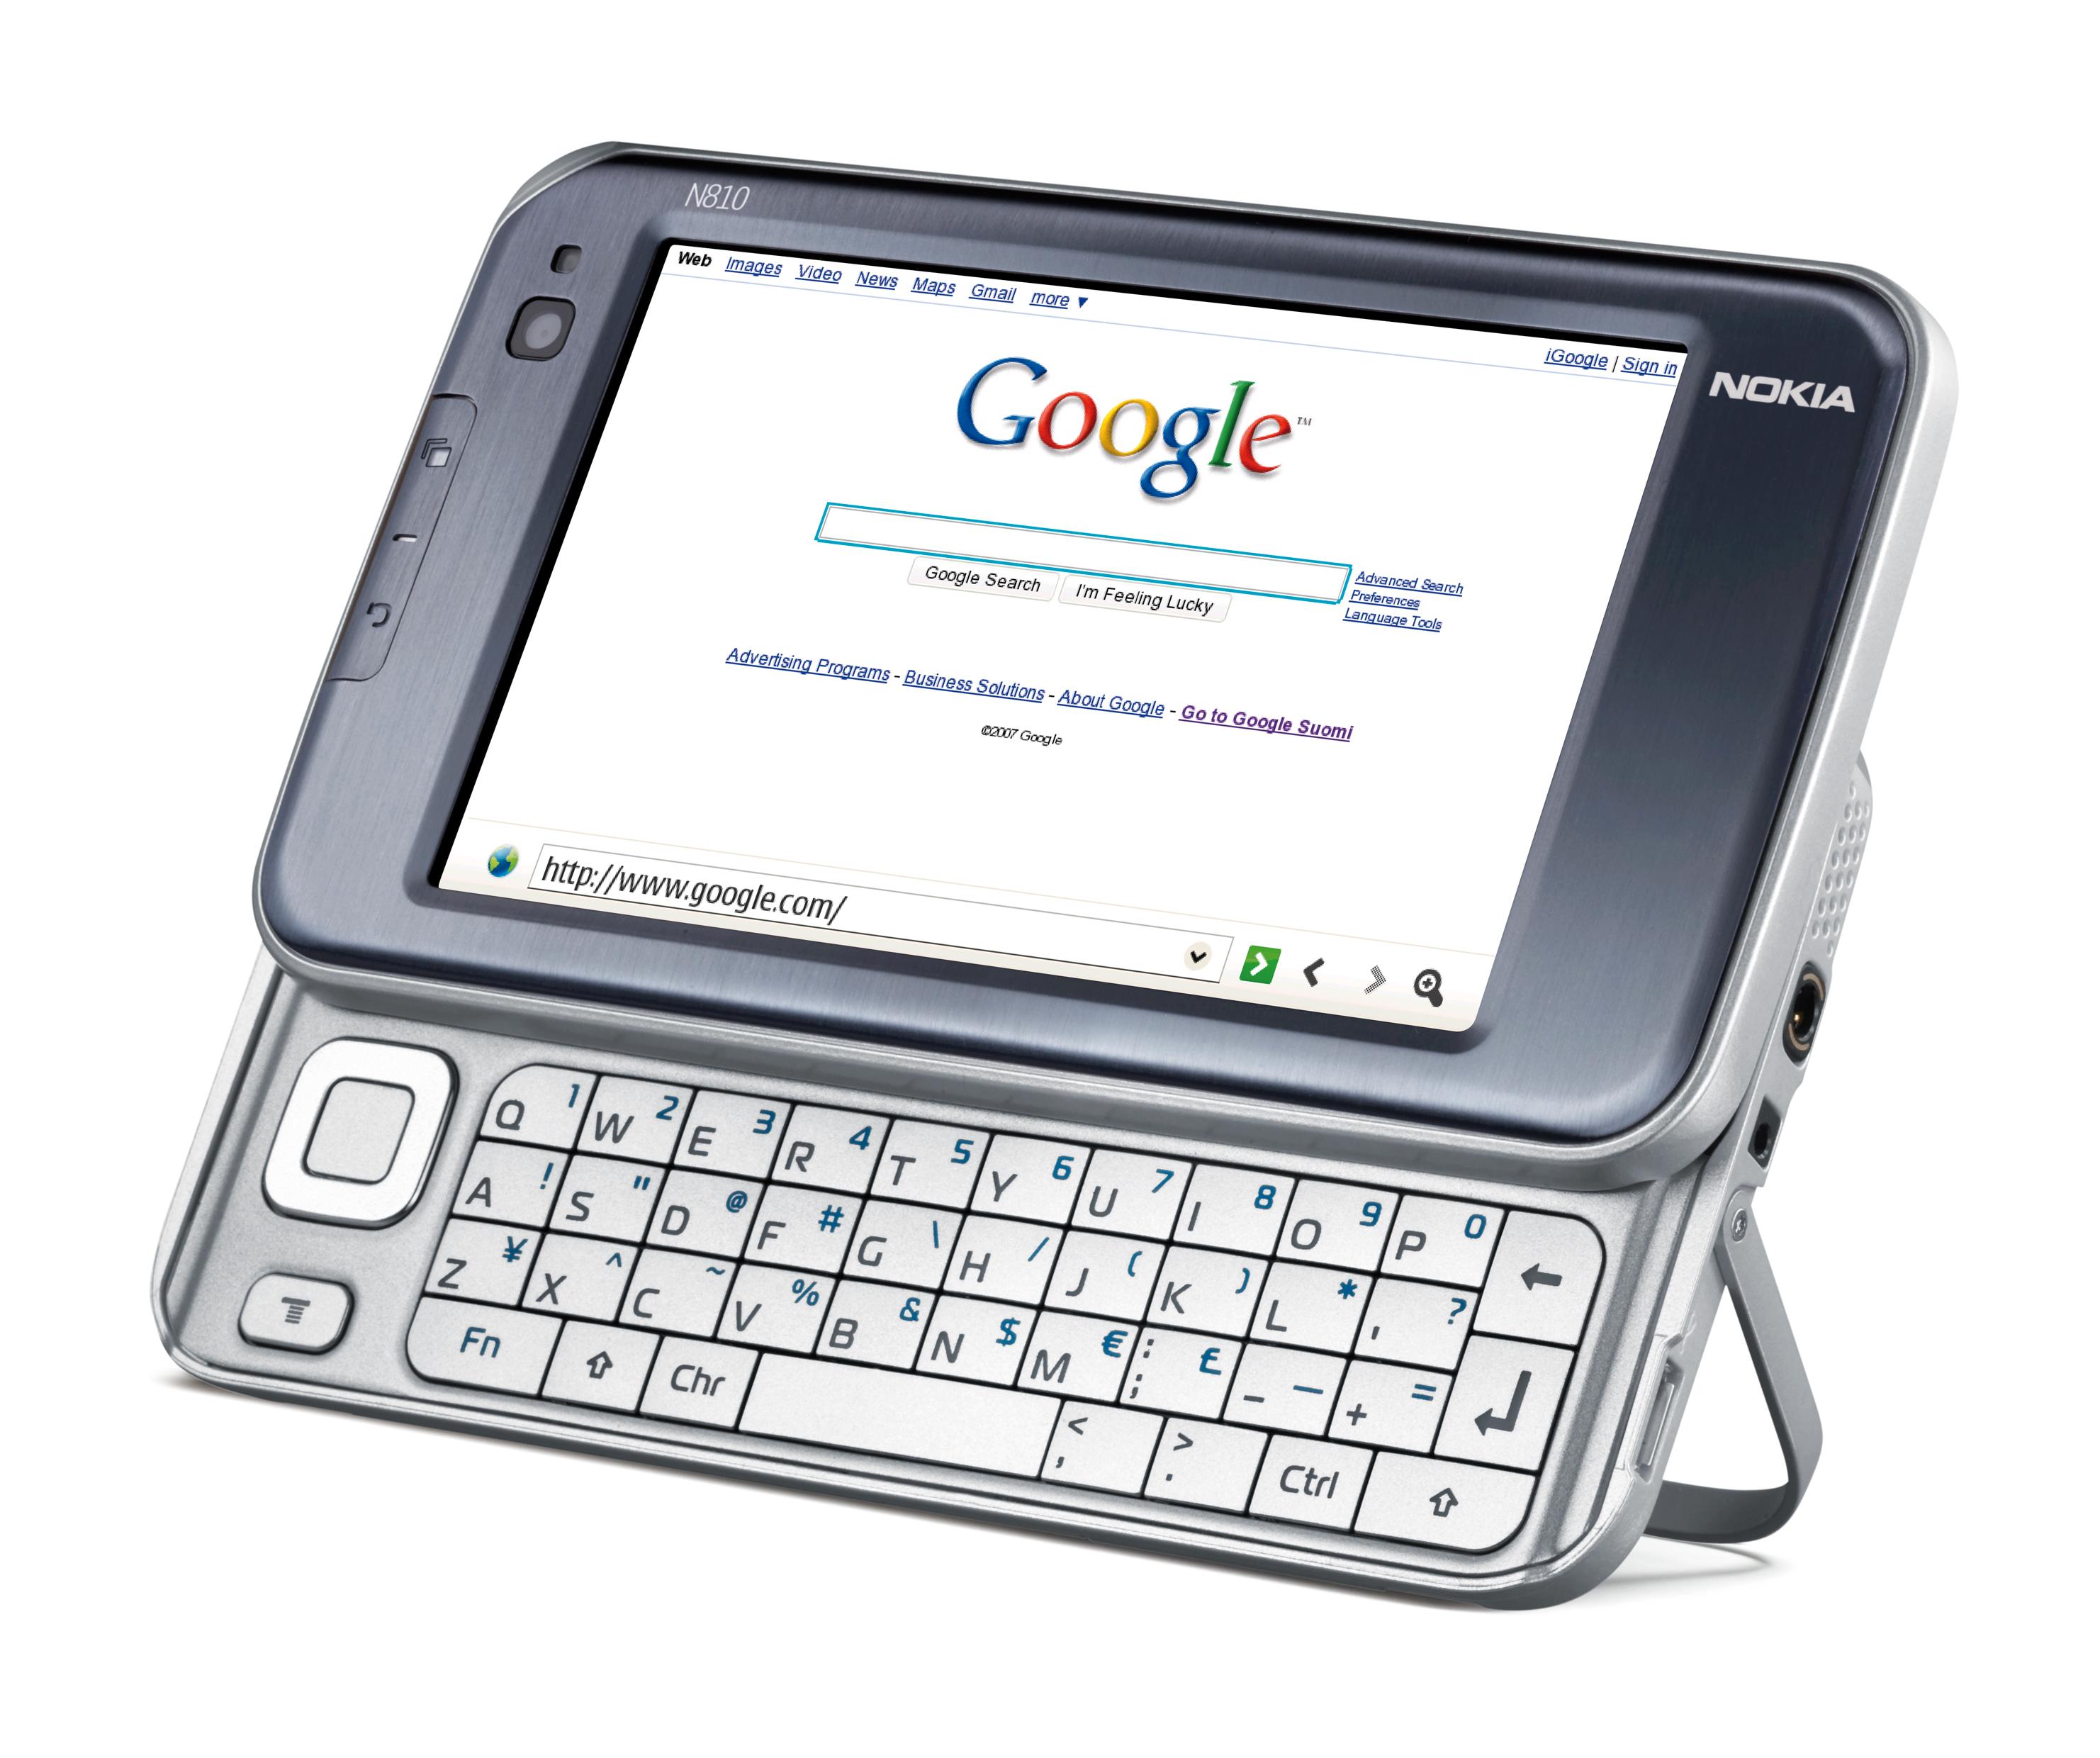 Det fulle tastaturet gjør det enkelt å skrive inn nettadresser og annet. (Foto: Nokia)